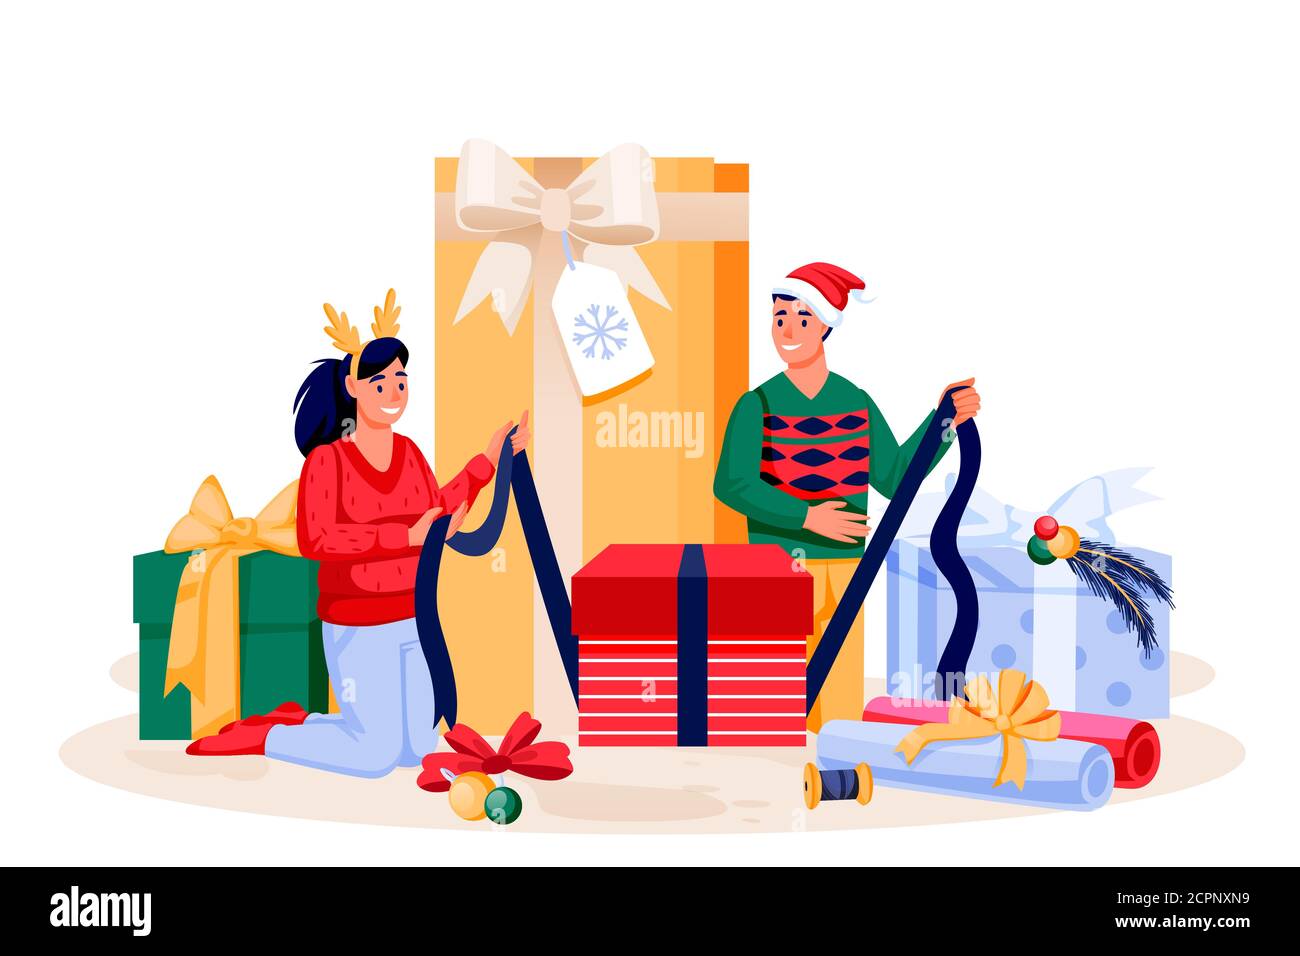 Junges Paar in Urlaub Kostüme Verpackung Weihnachtsgeschenke. Glückliche Familie, die sich auf die Neujahrsfeier vorbereitet. Vektor flache Cartoon-Figuren Illustration. Stock Vektor